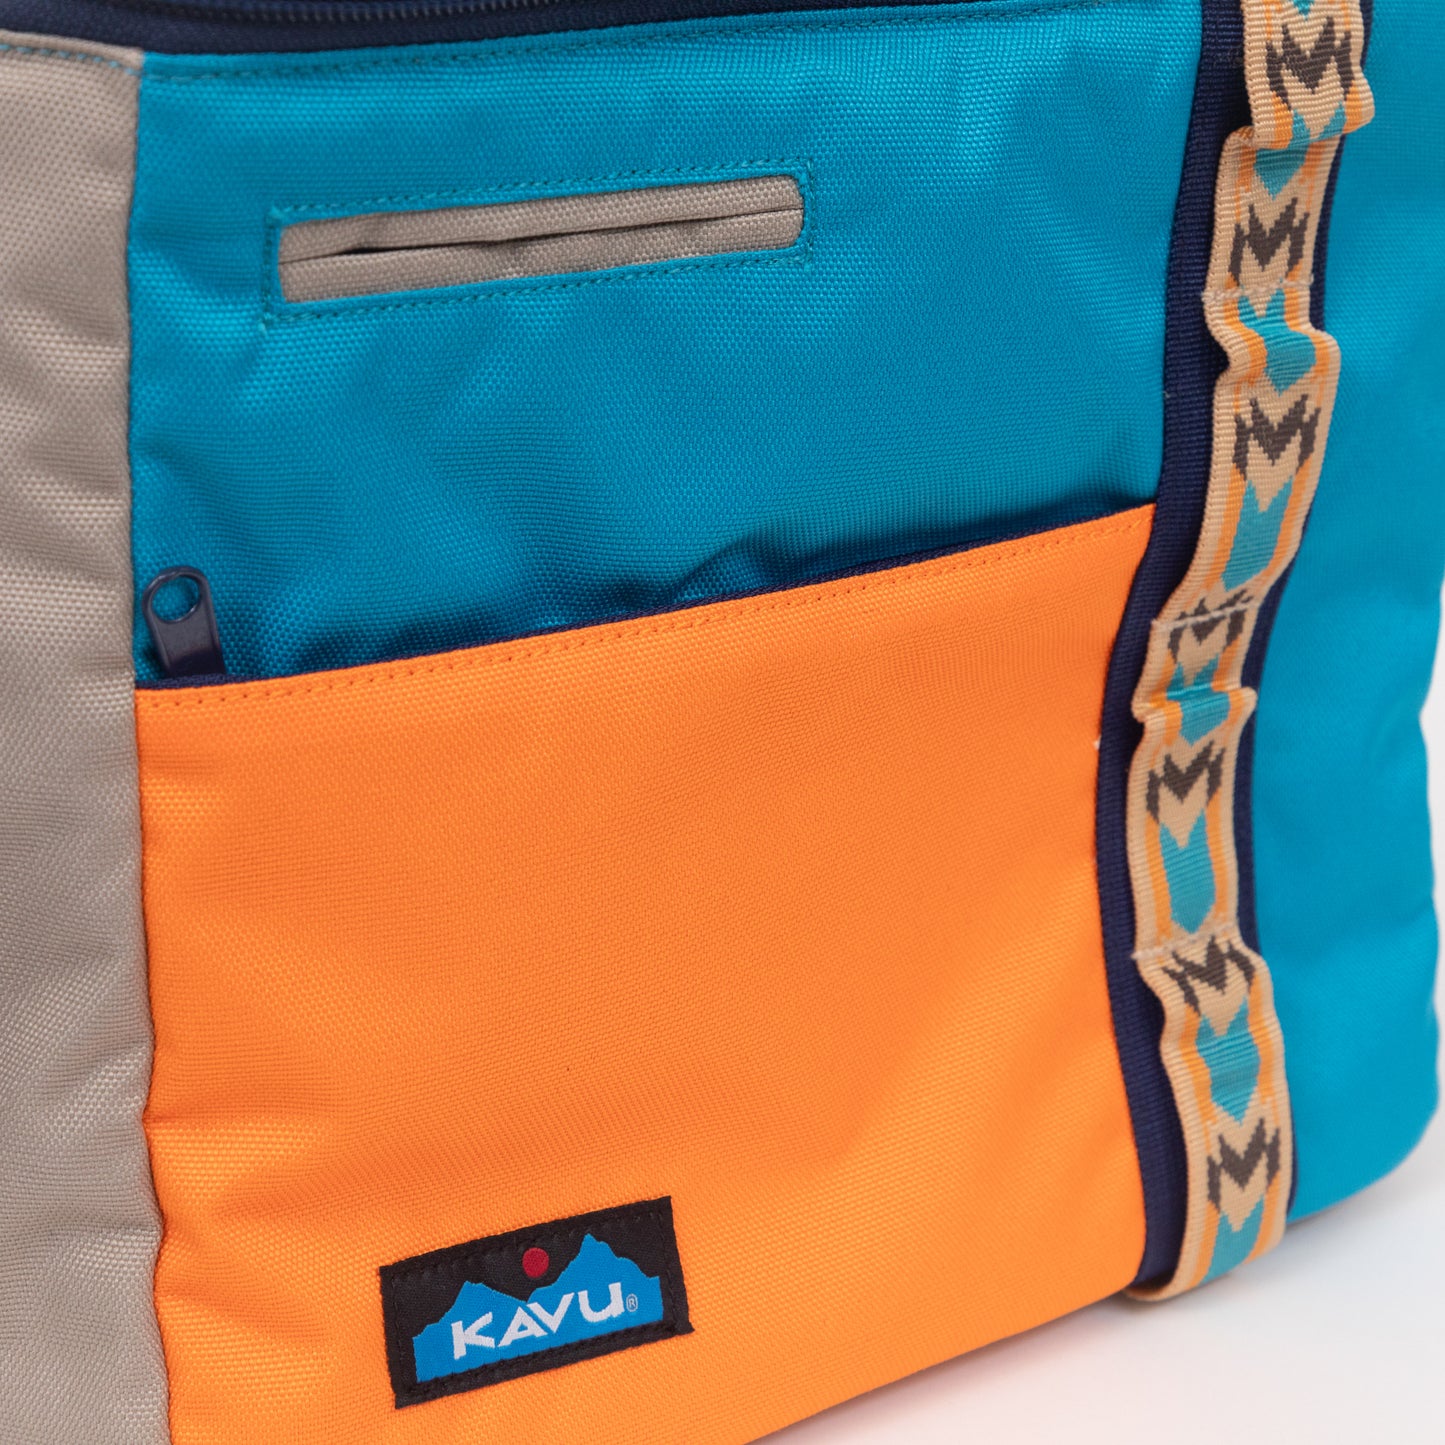 KAVU Snack Sack Cooler Bag in BLUE & ORANGE